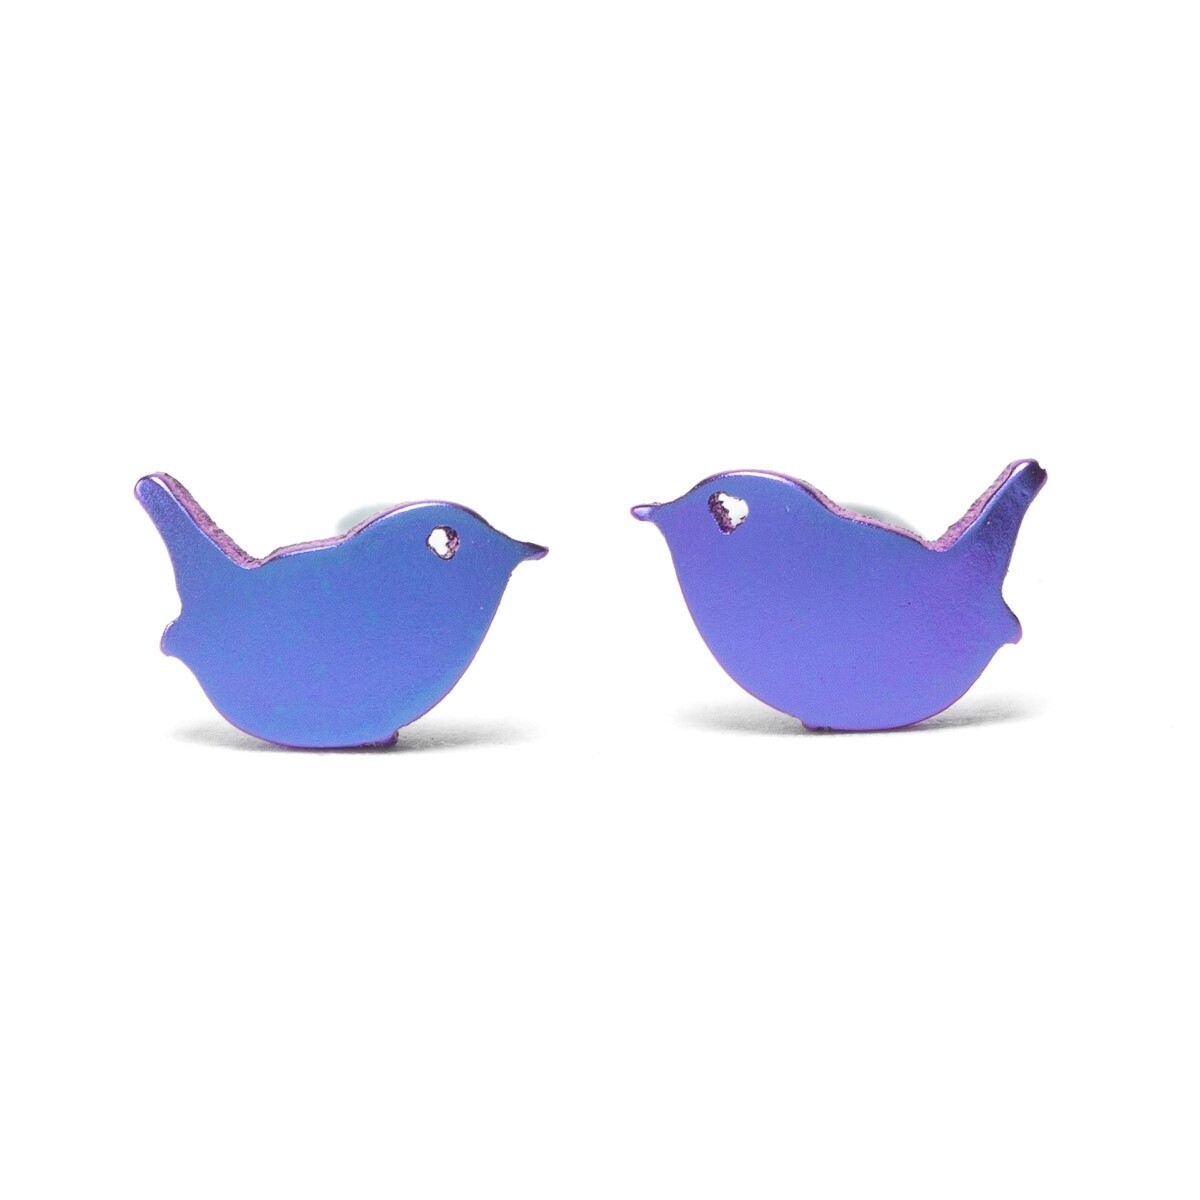 Titanium Wren Bird Studs - Purple by Prism Design